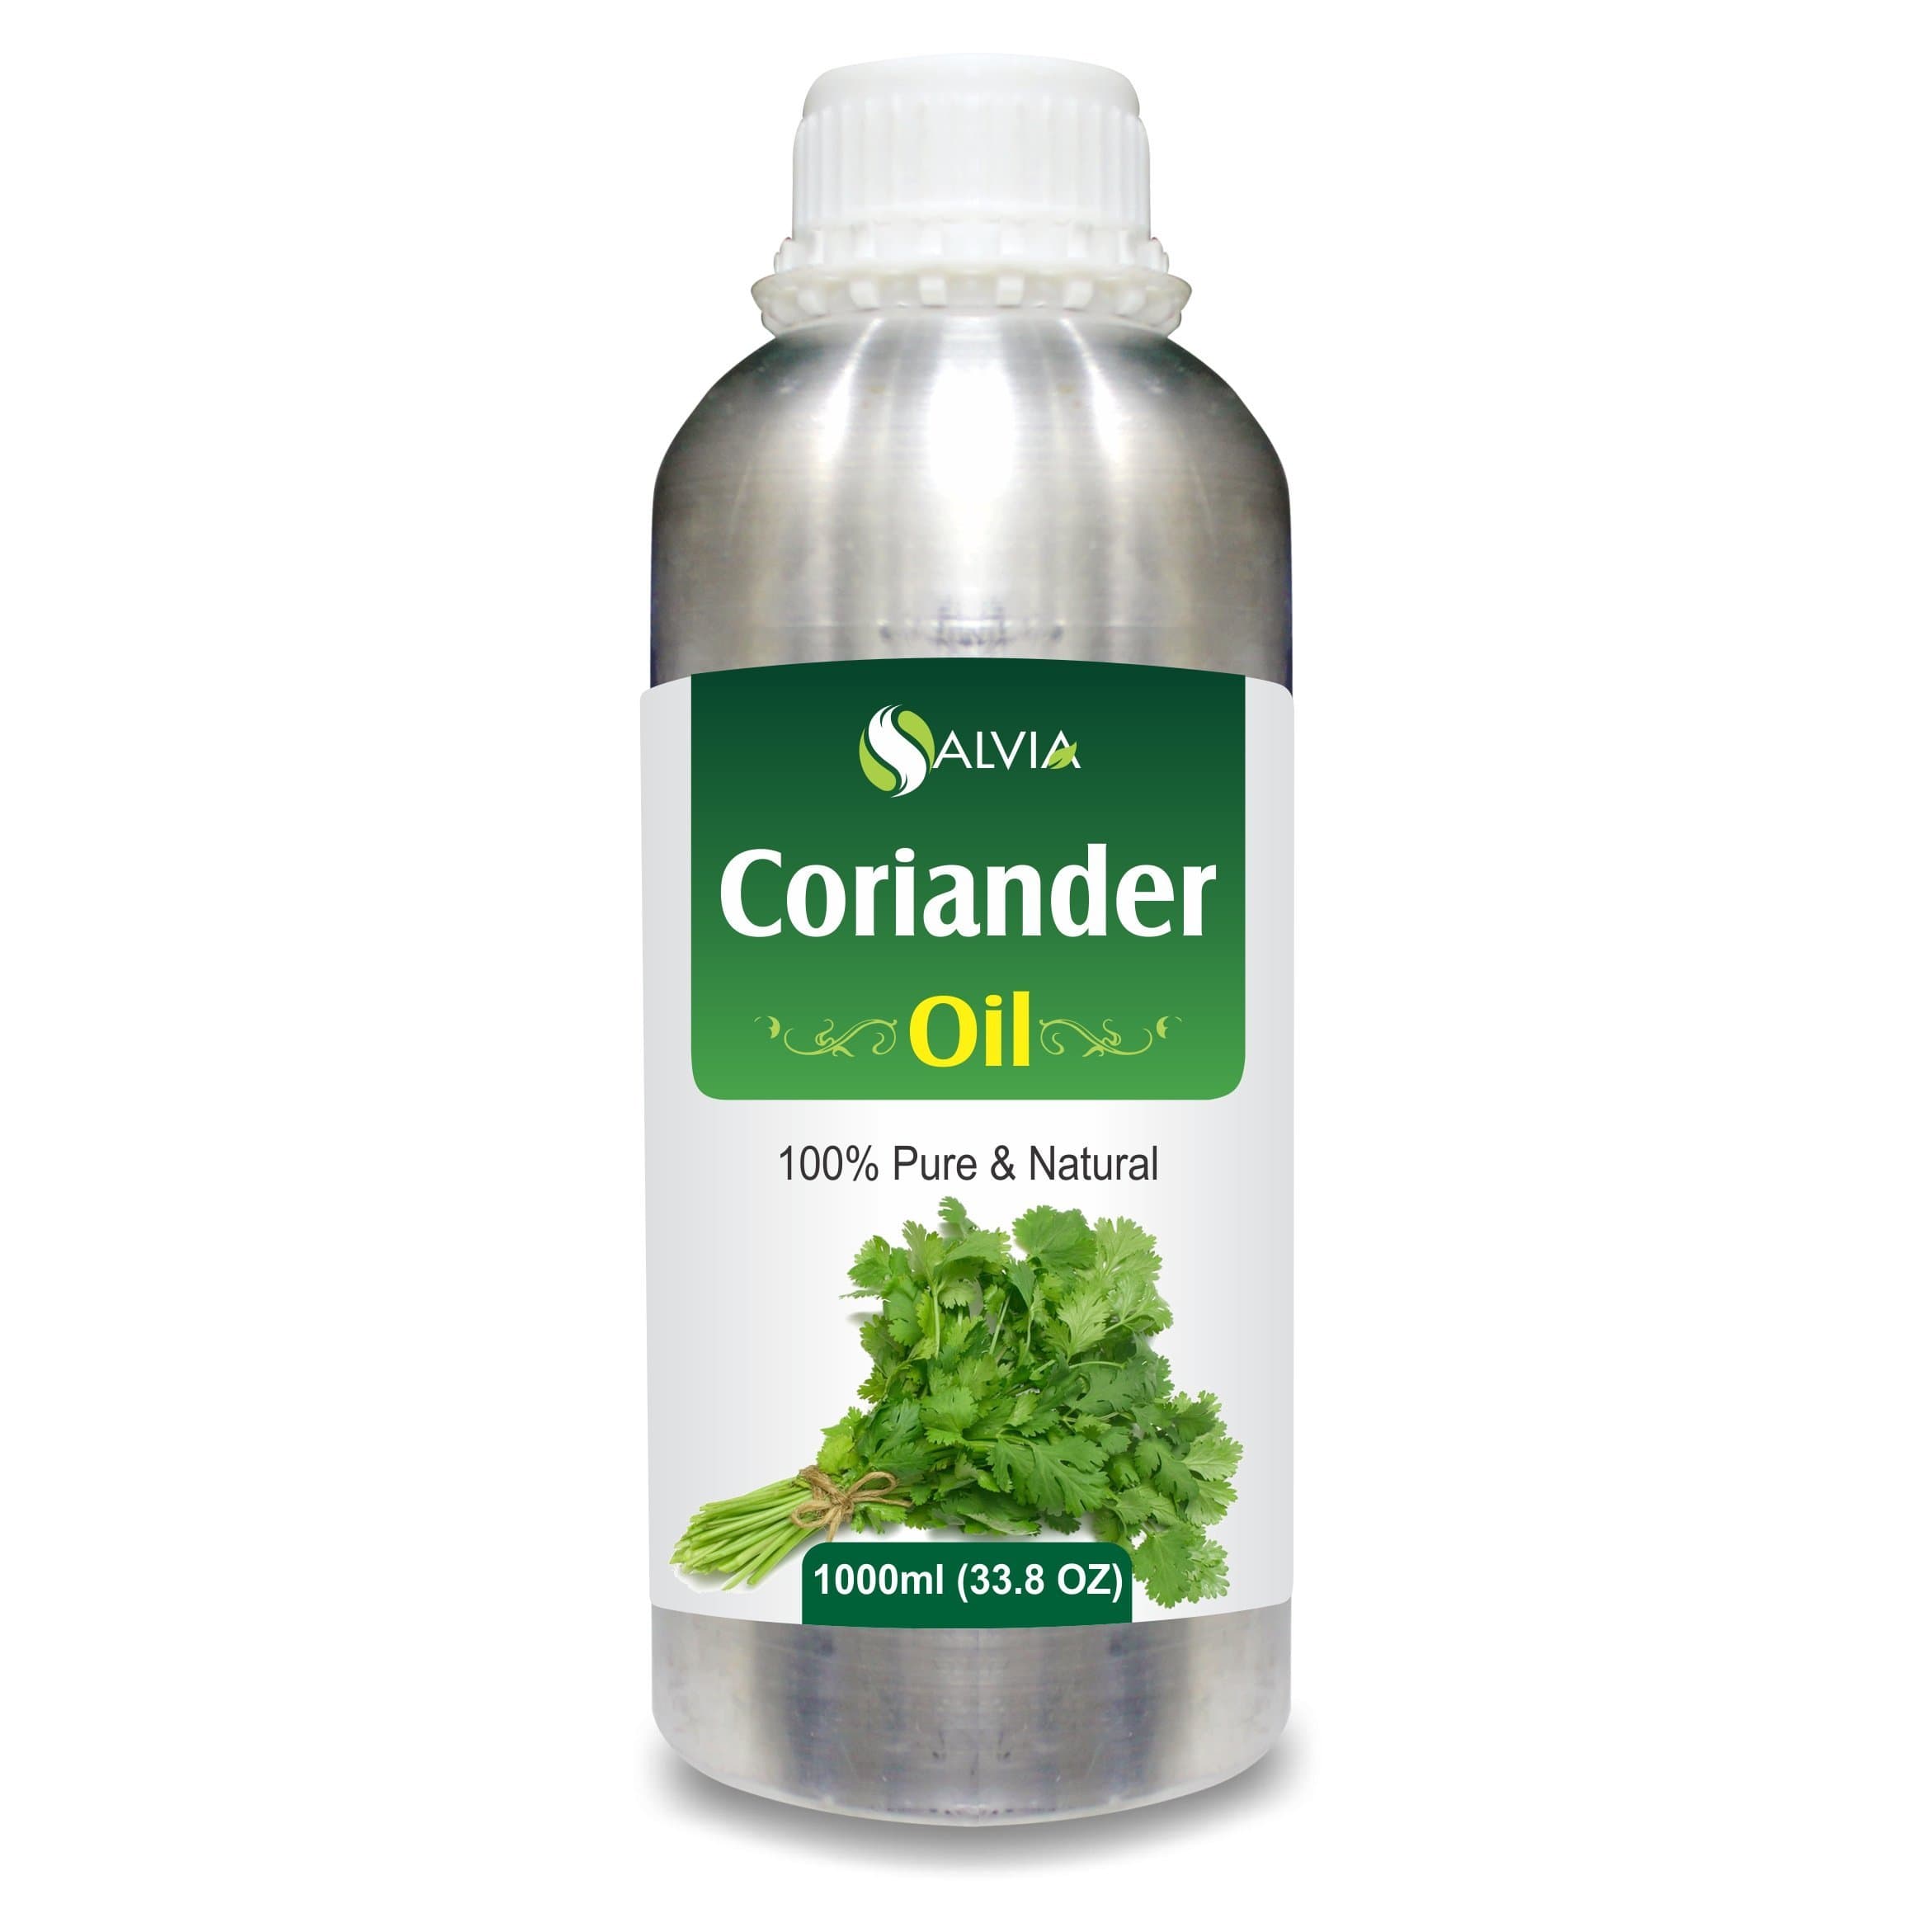 coriander oil recipe